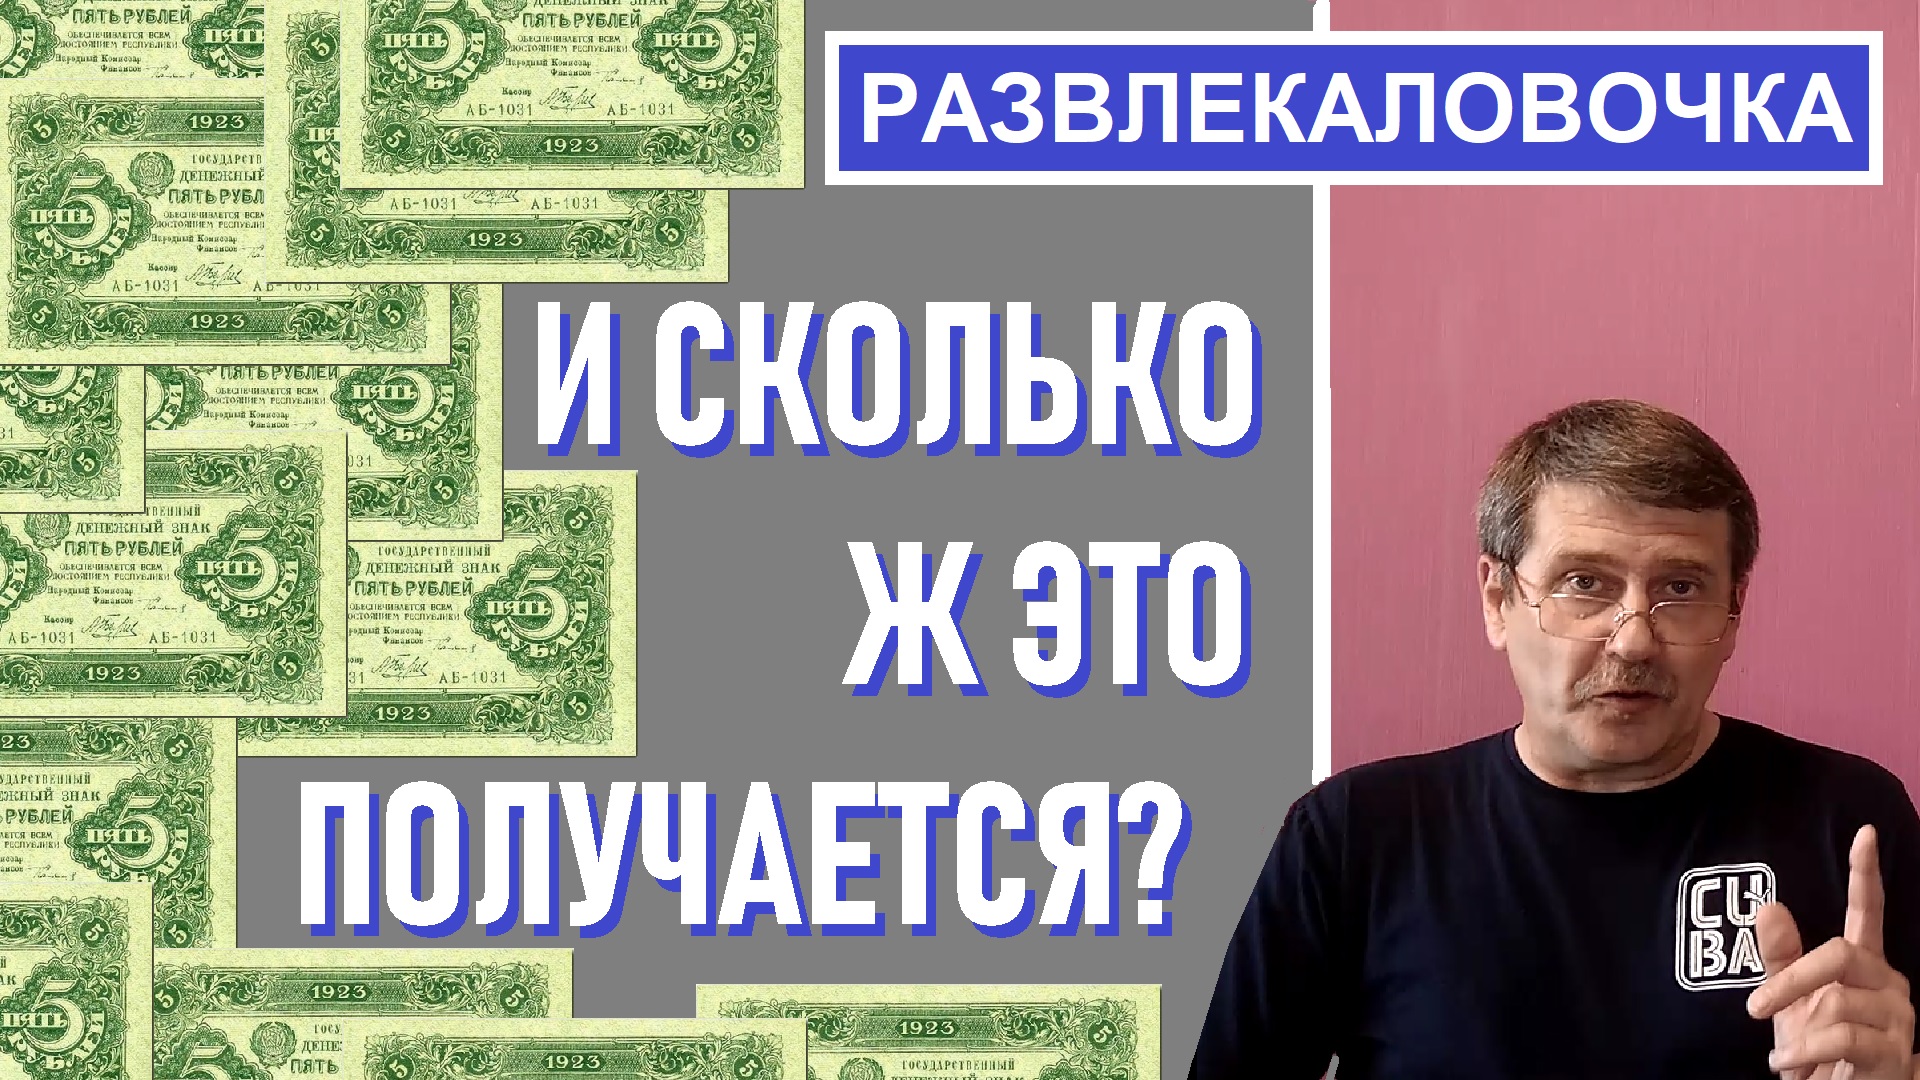 Сосчитайте сколько денег )) Банкноты / Монеты с Олегом Ординцевым